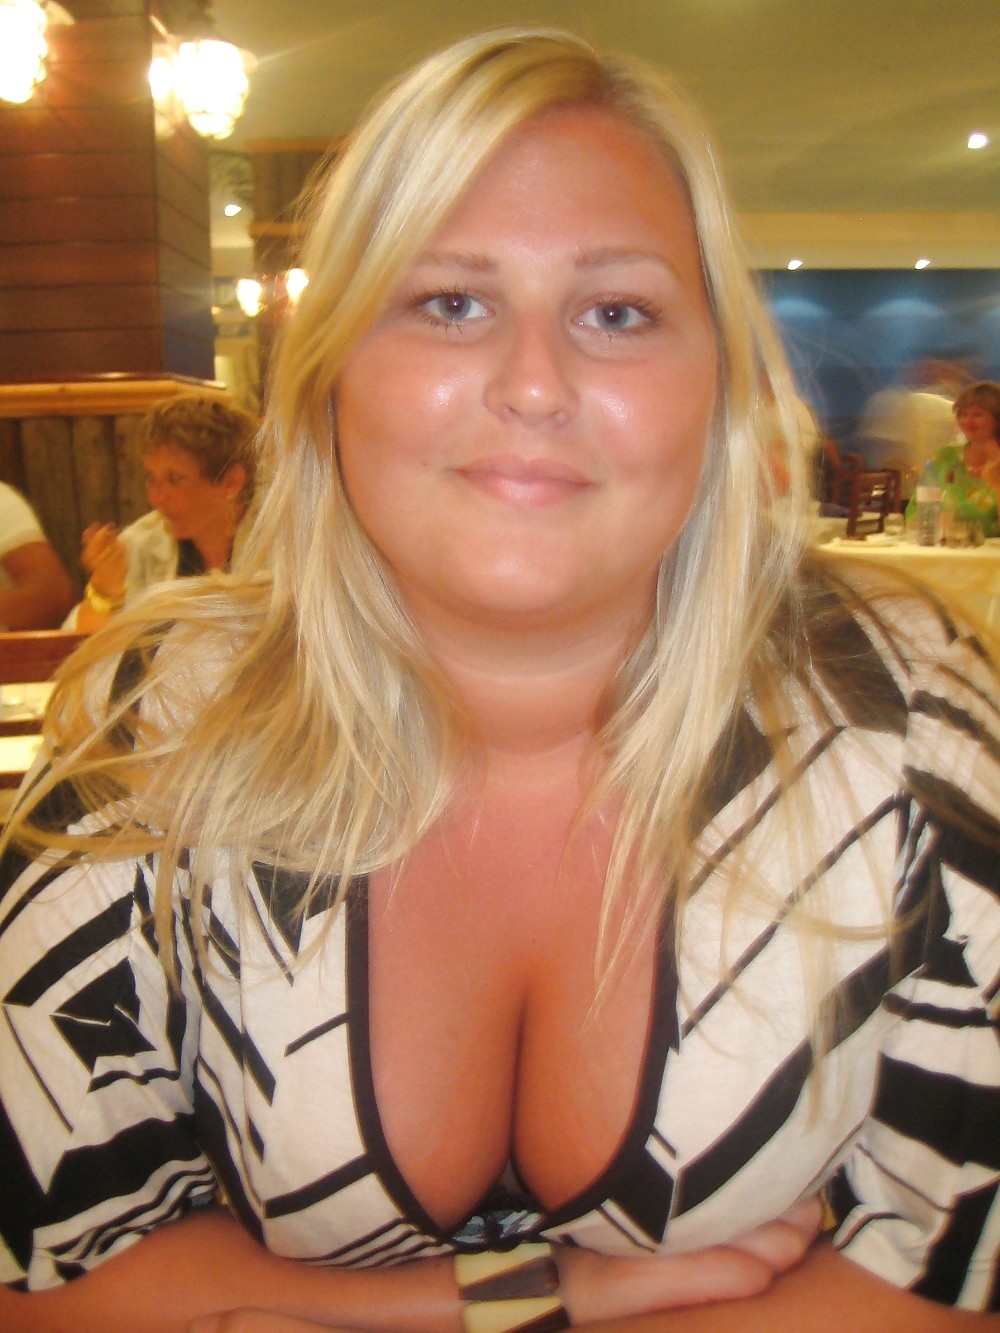 Chubby swedish girl adult photos